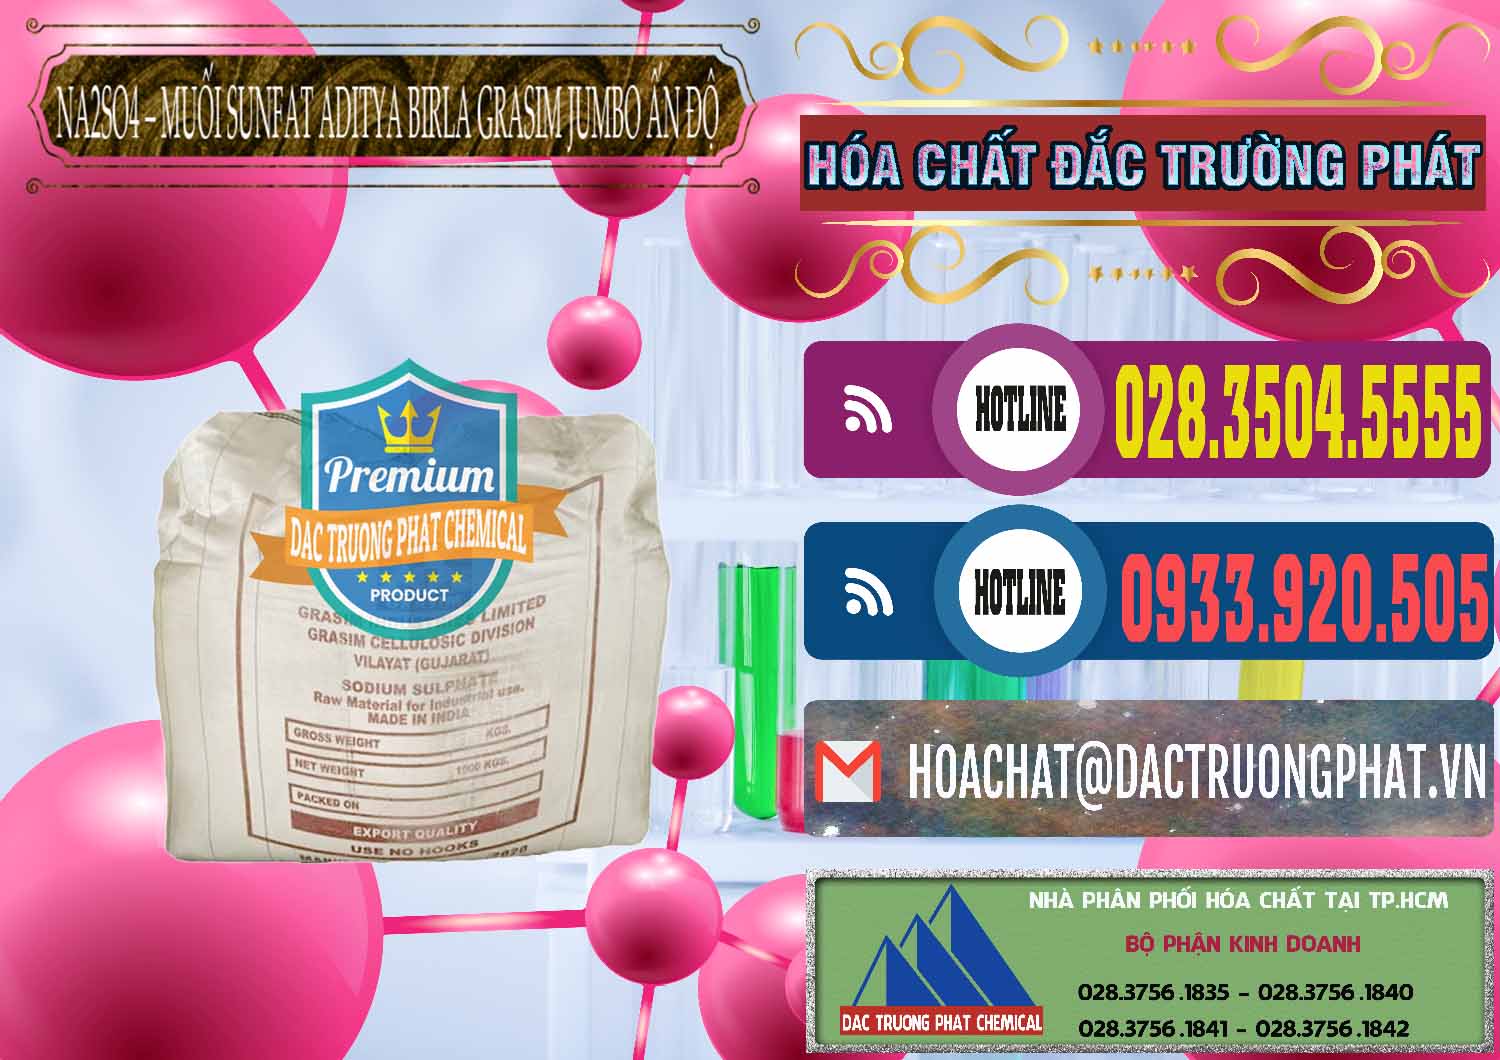 Nơi bán & cung cấp Sodium Sulphate - Muối Sunfat Na2SO4 Jumbo Bành Aditya Birla Grasim Ấn Độ India - 0357 - Nhà nhập khẩu & cung cấp hóa chất tại TP.HCM - muabanhoachat.com.vn